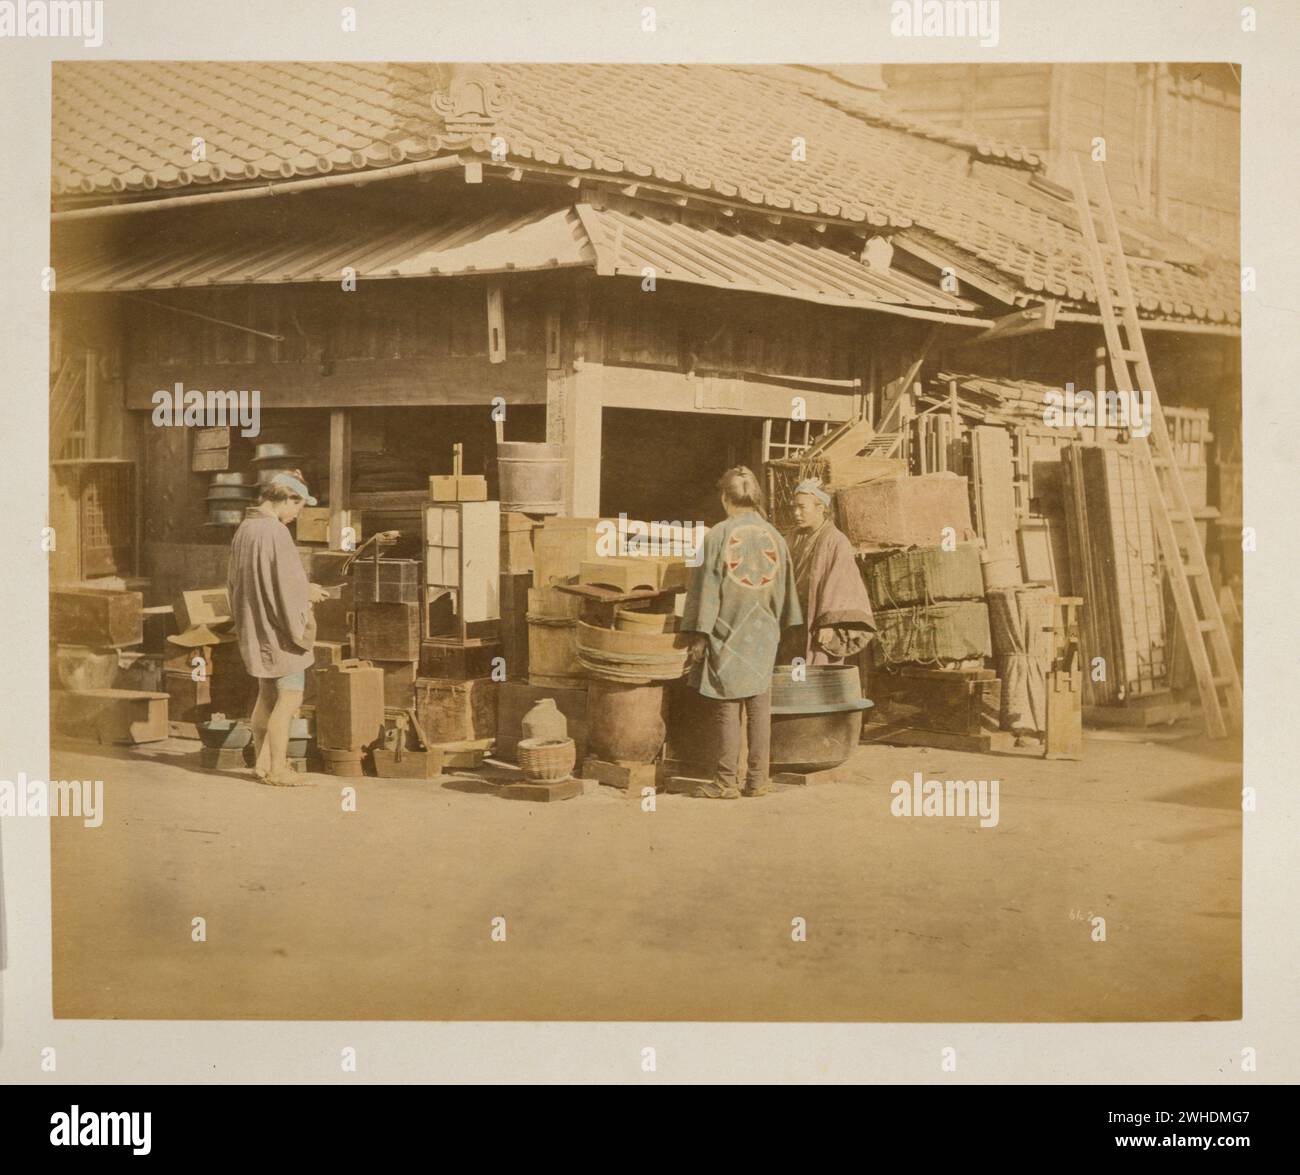 Außenansicht des Ladens an der Straßenecke mit Waren entlang der Straßenränder und drei Personen, Einkäufer und Händler... Japan handkoloriert mit Aquarell-Fotografie um die 1870er Jahre Stockfoto